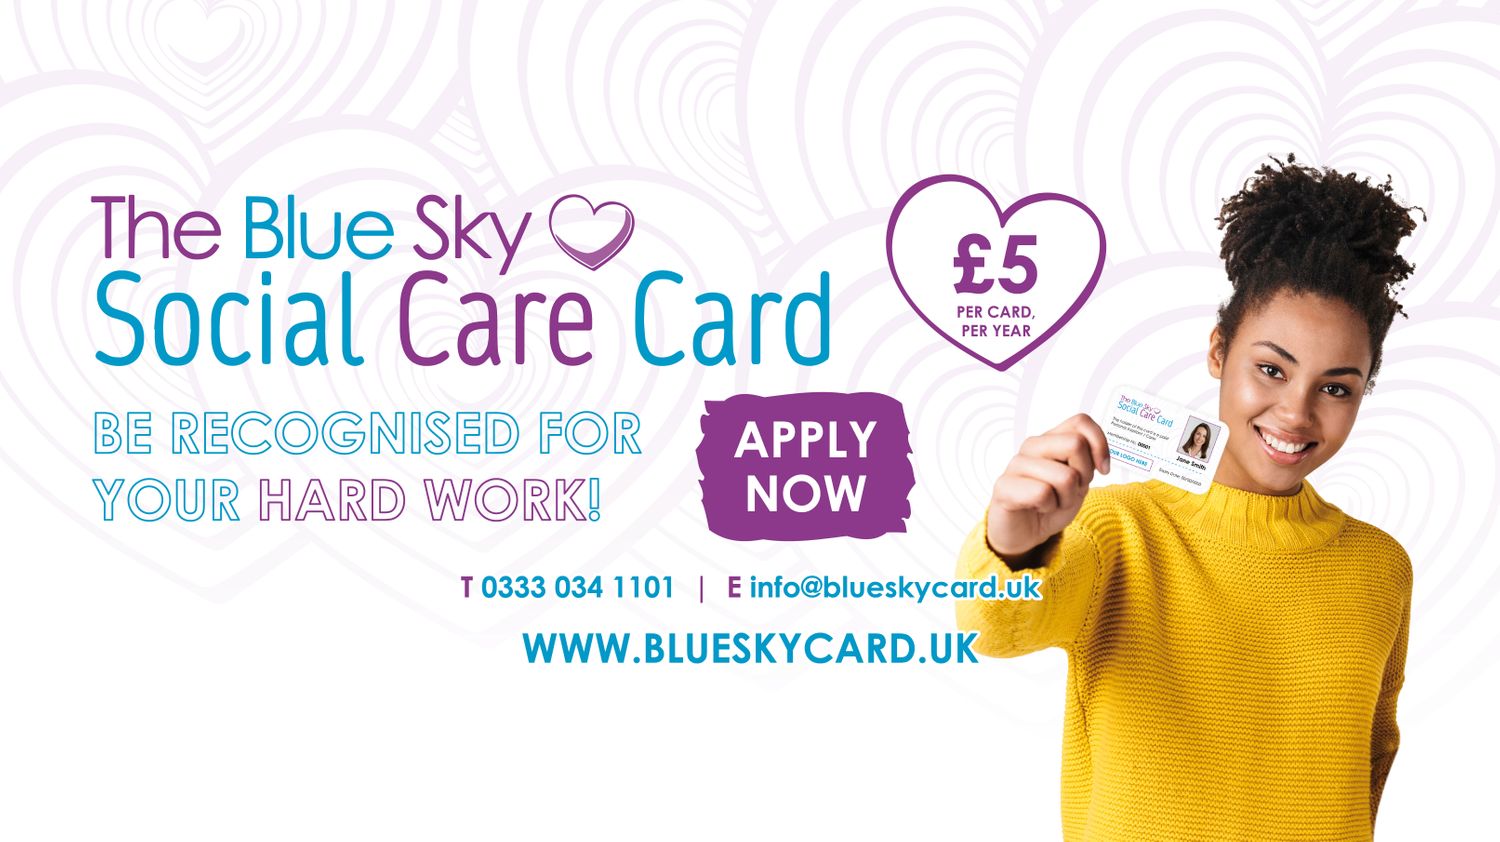 The Blue Sky Social Care Card